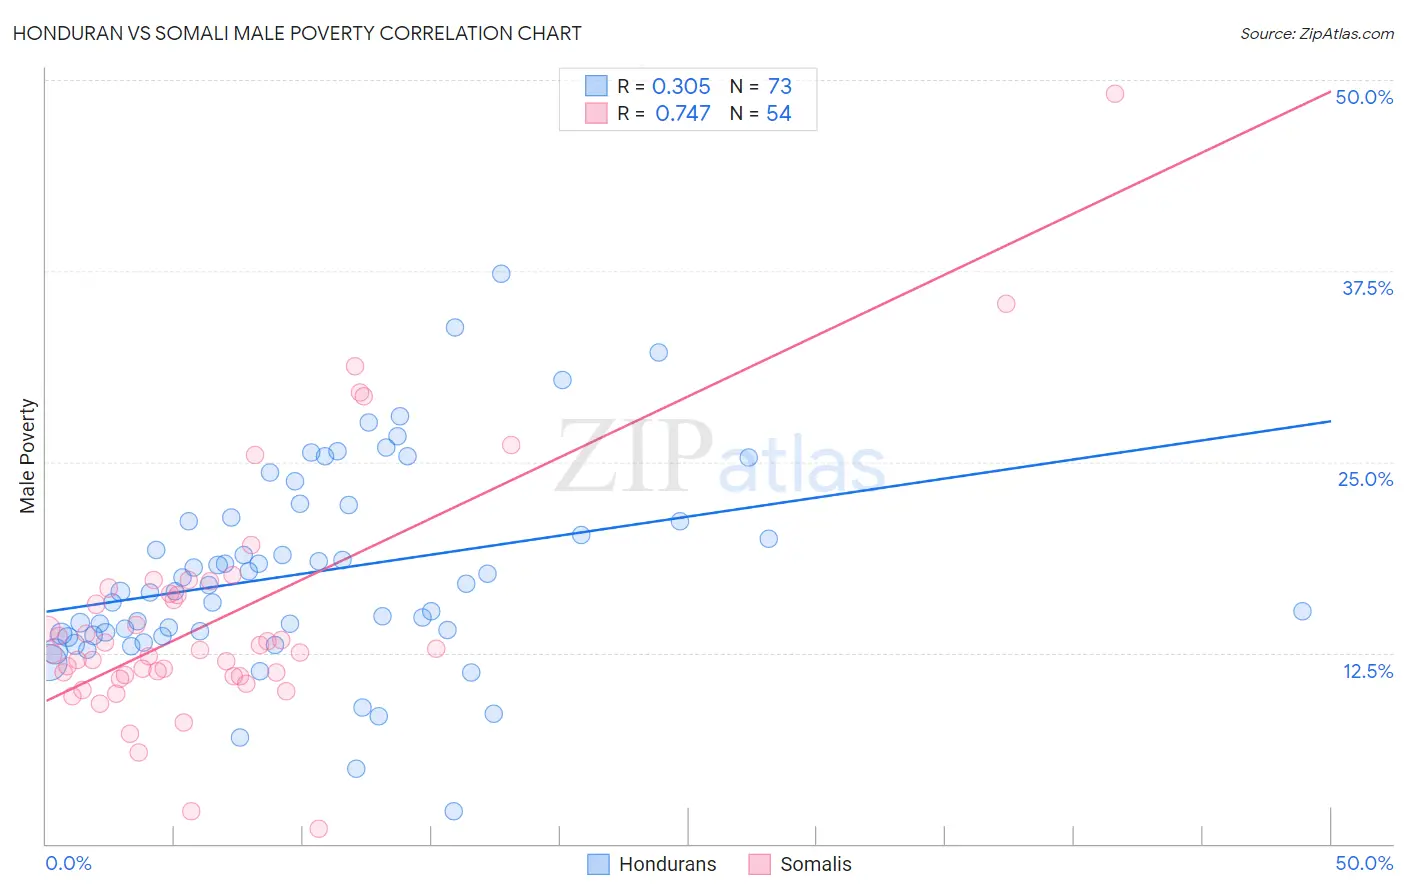 Honduran vs Somali Male Poverty